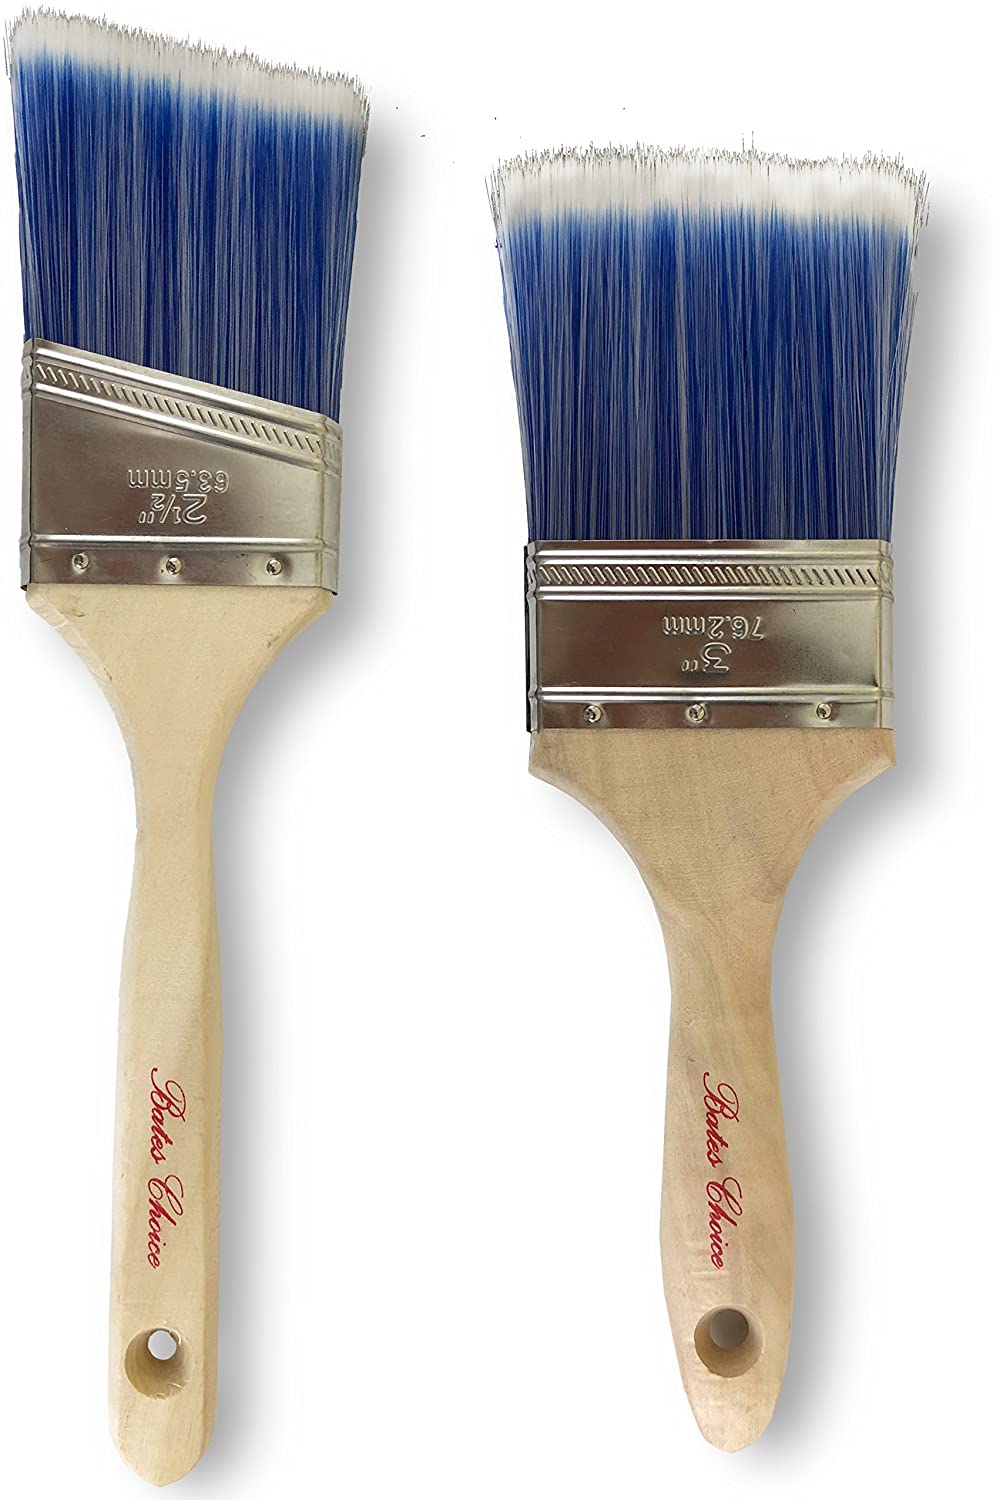 Bates Paint Brushes- 2 Pack, Premium Paintbrush, Treated Wood Handle, Paint Brush,  Paint Brushes Set, Professional Brush Set, House Paint Brush - Bates Choice